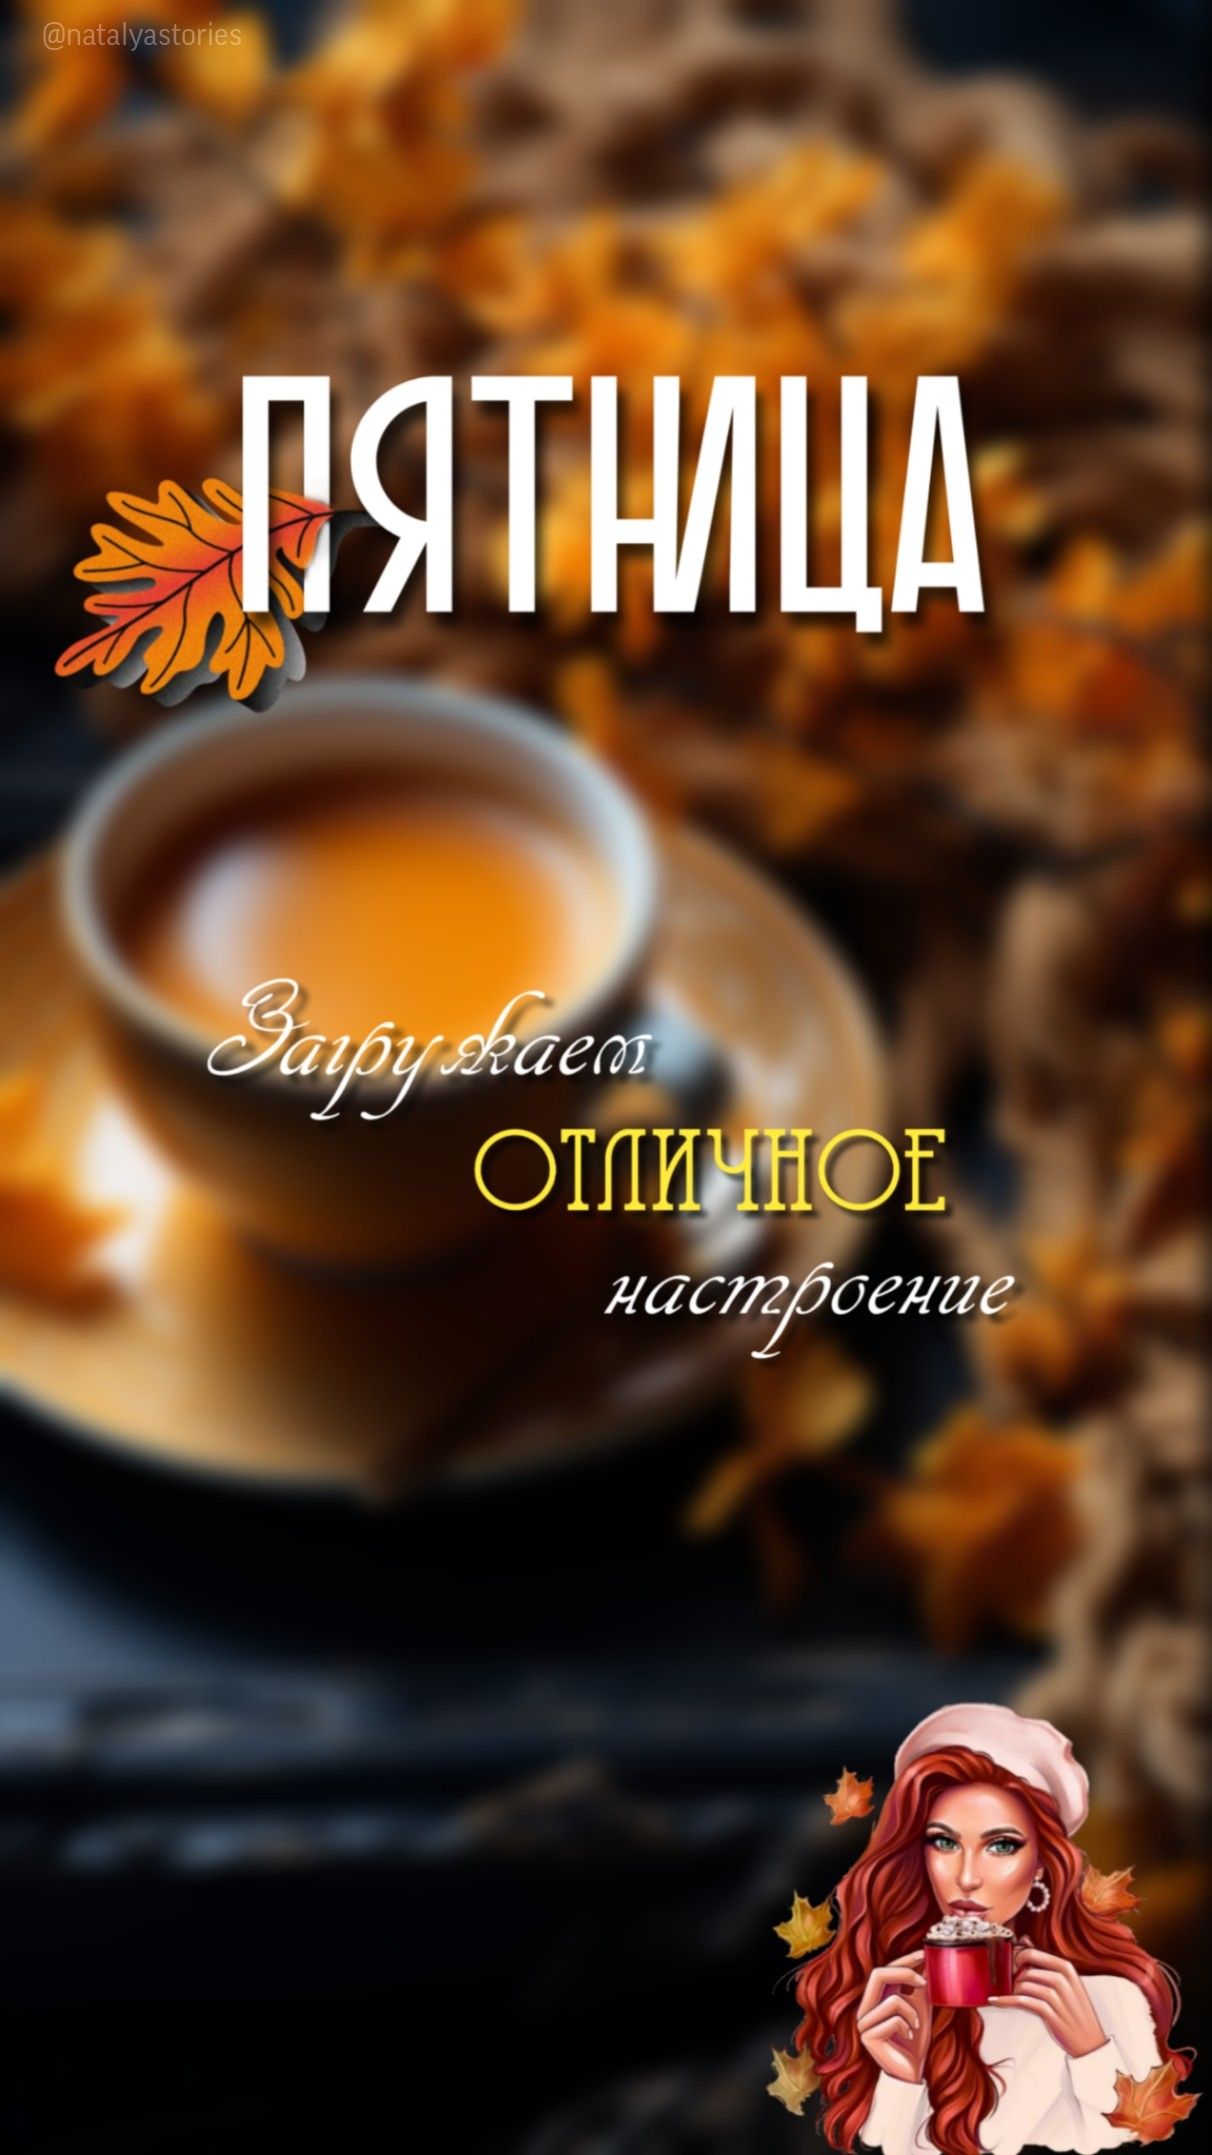 Кофе на доброе утро и хорошей жизни осени (15)